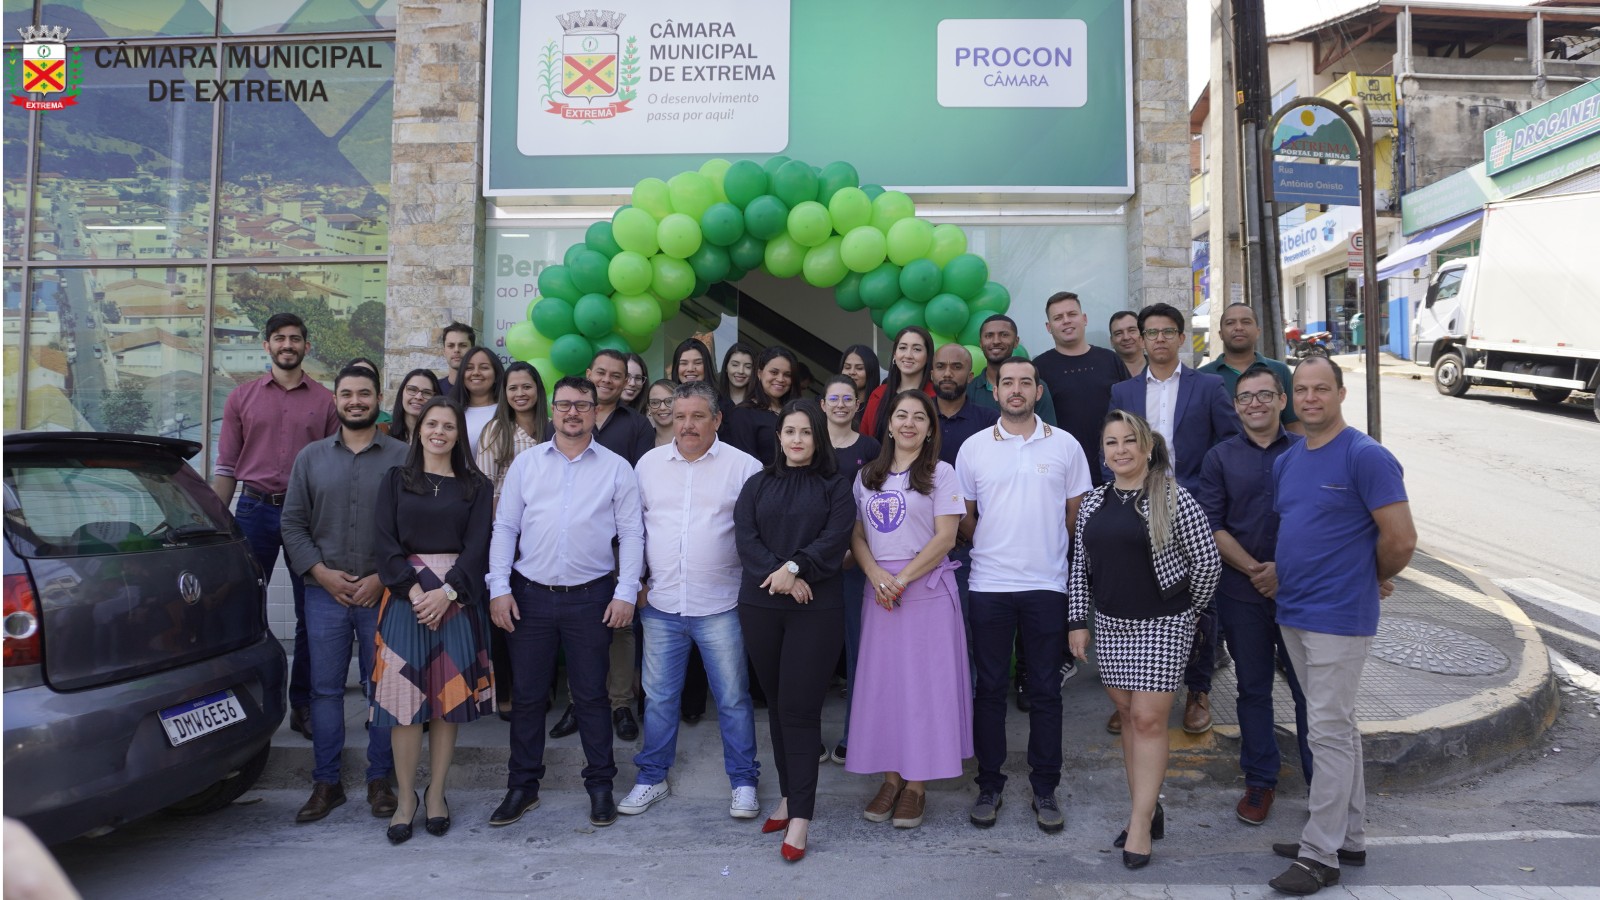 Procon Câmara inaugura nova sede na região central de Extrema